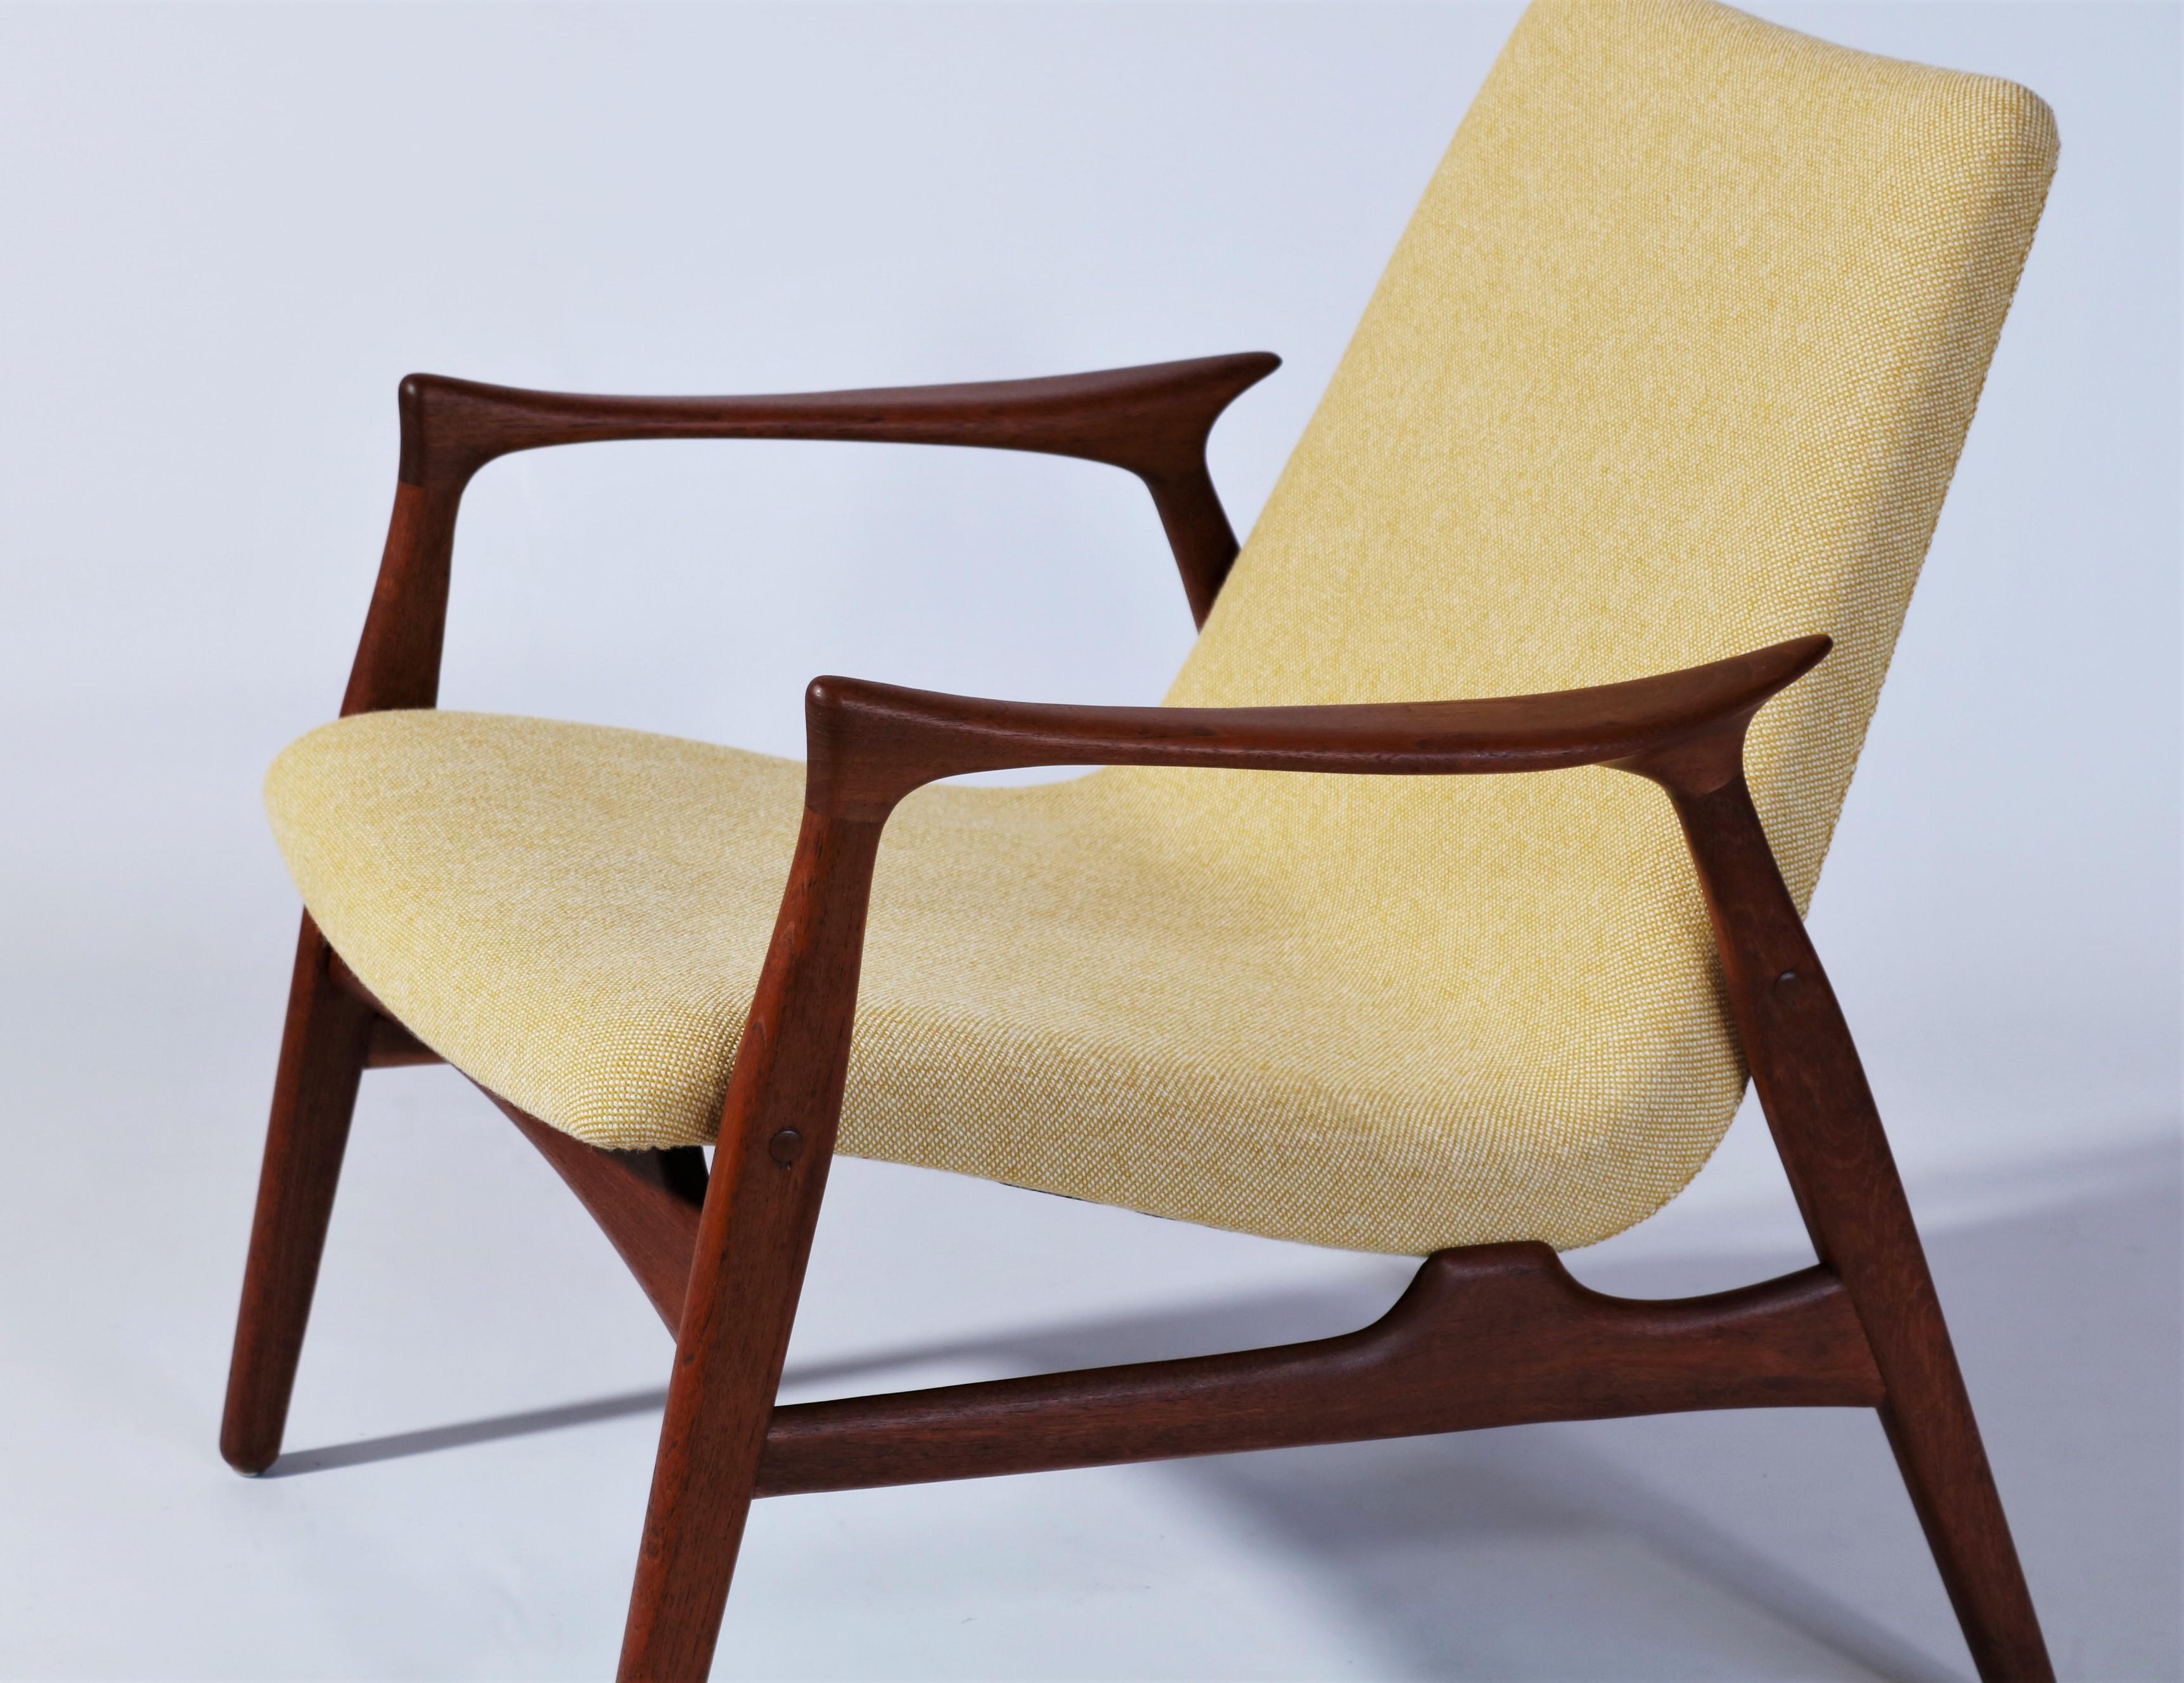 Scandinavian Modern Danish Modern Easy Chair in Teak Wood by Arne Hovmand Olsen, Denmark, 1958